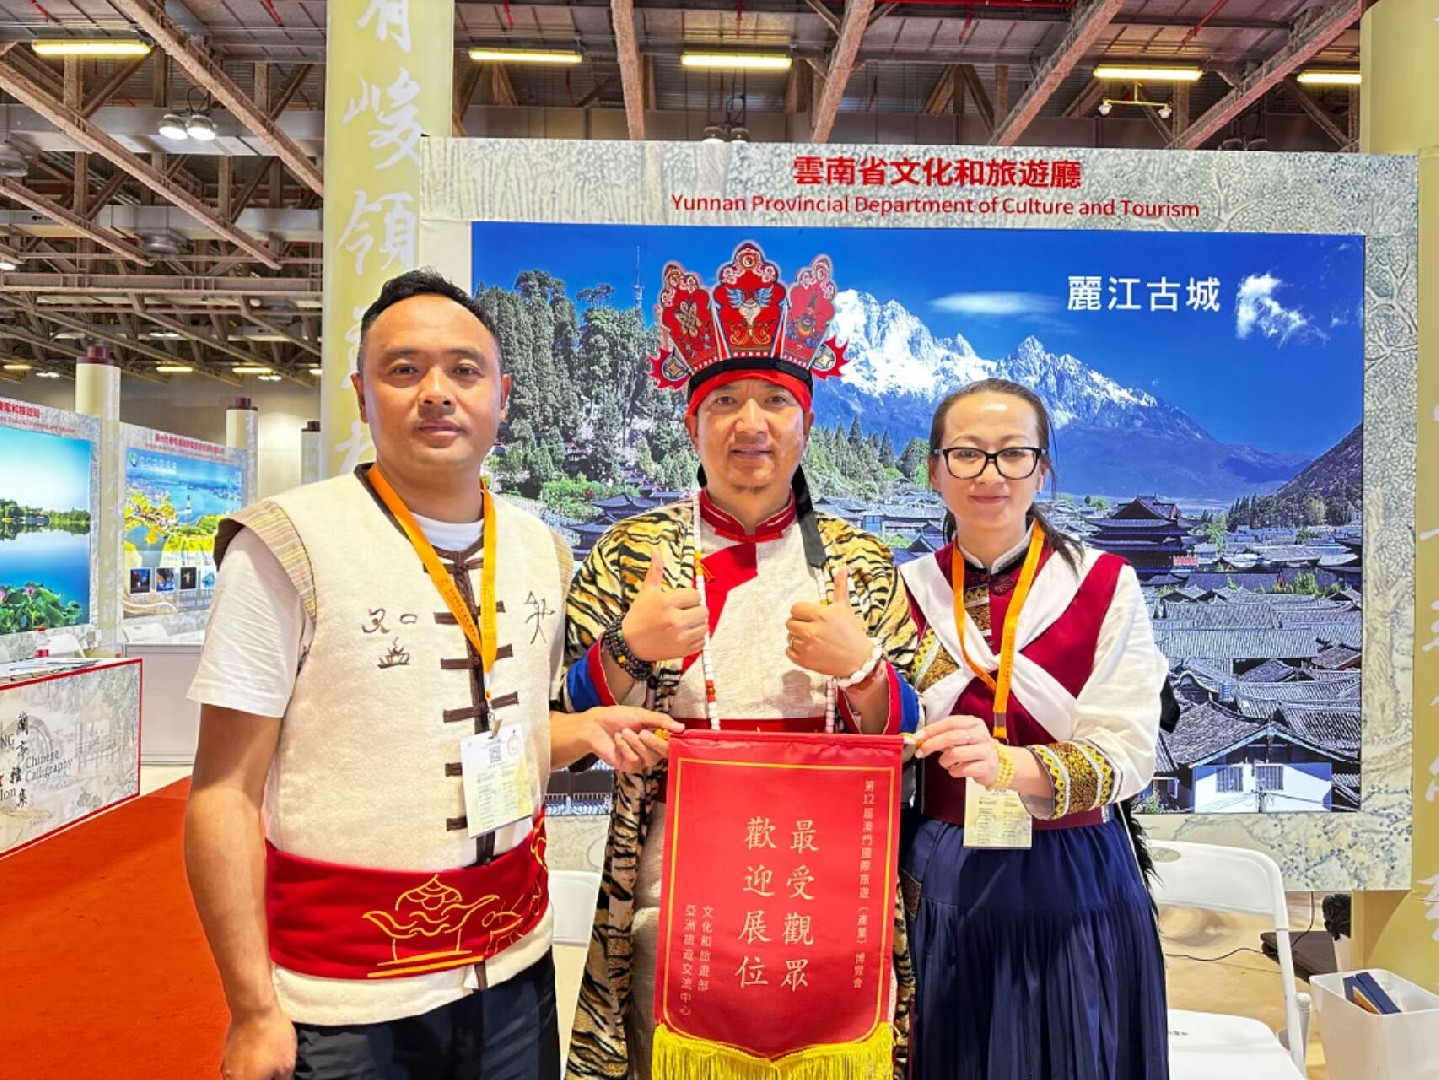 和华强东巴去澳门参加第十二届澳门国际旅游（产业）博览会，宣传东巴文化